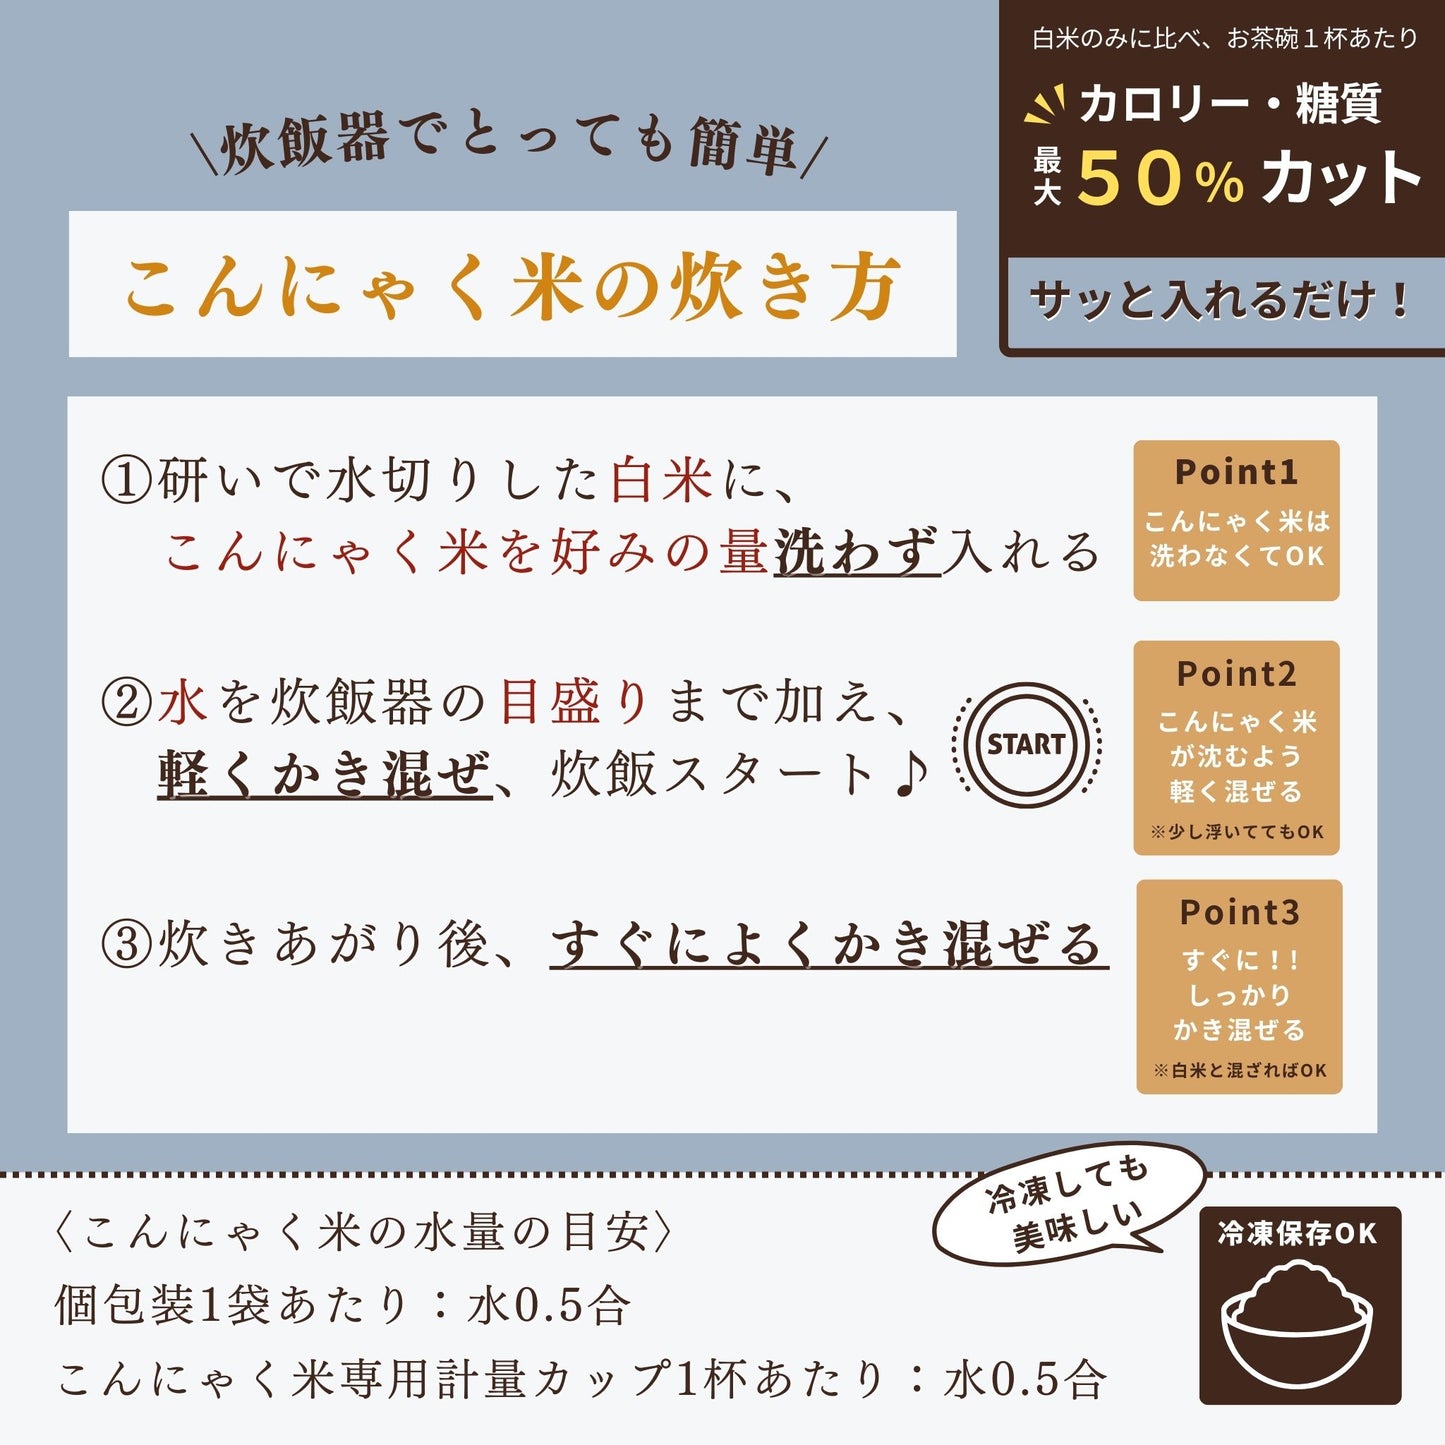 【お試し14日分】SHINOBI 無農薬こんにゃく米(個包装タイプ/14袋)